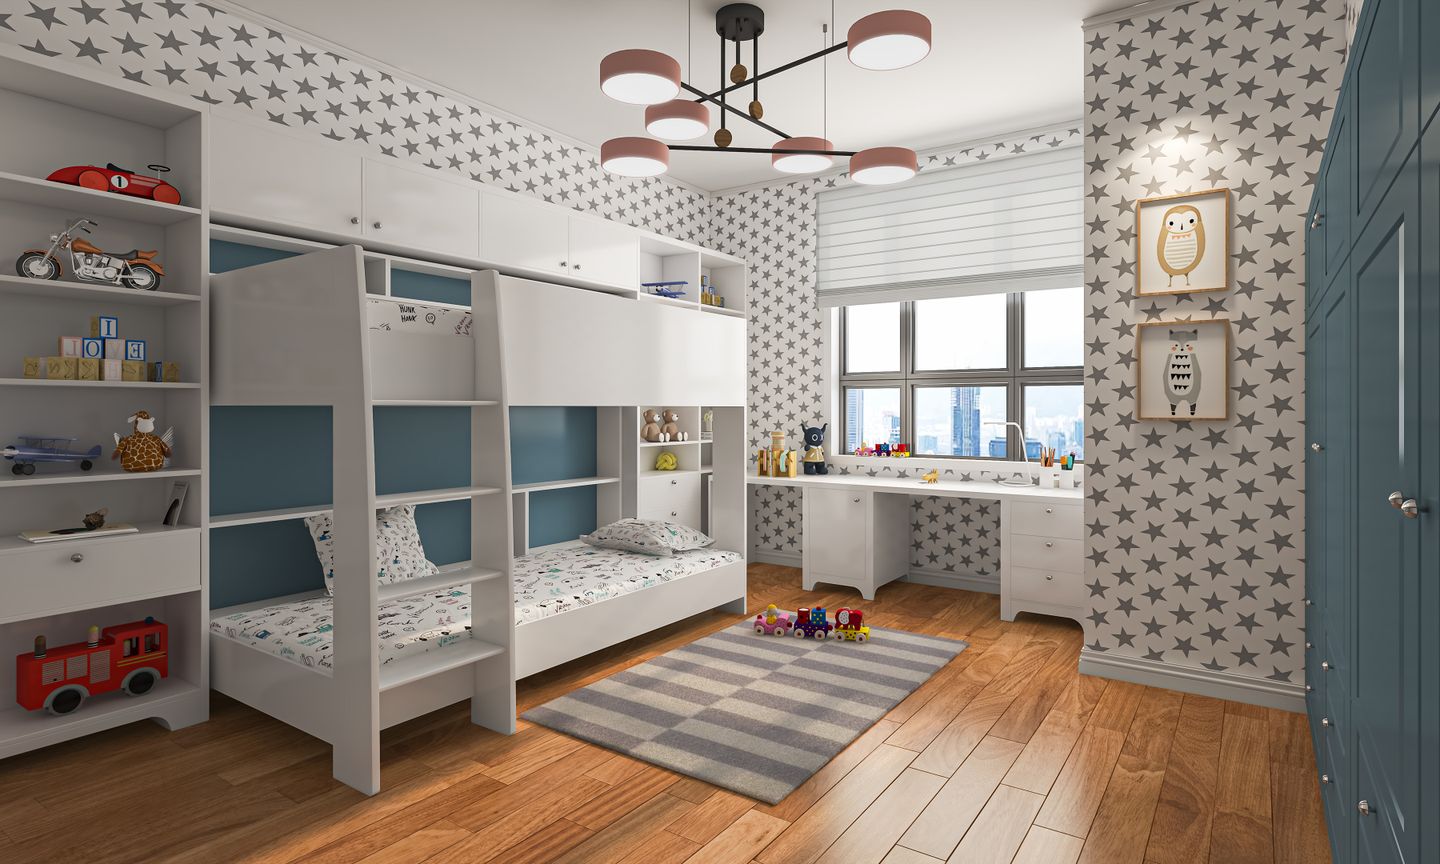 Kids Bedroom Design with Bunk Beds - Livspace